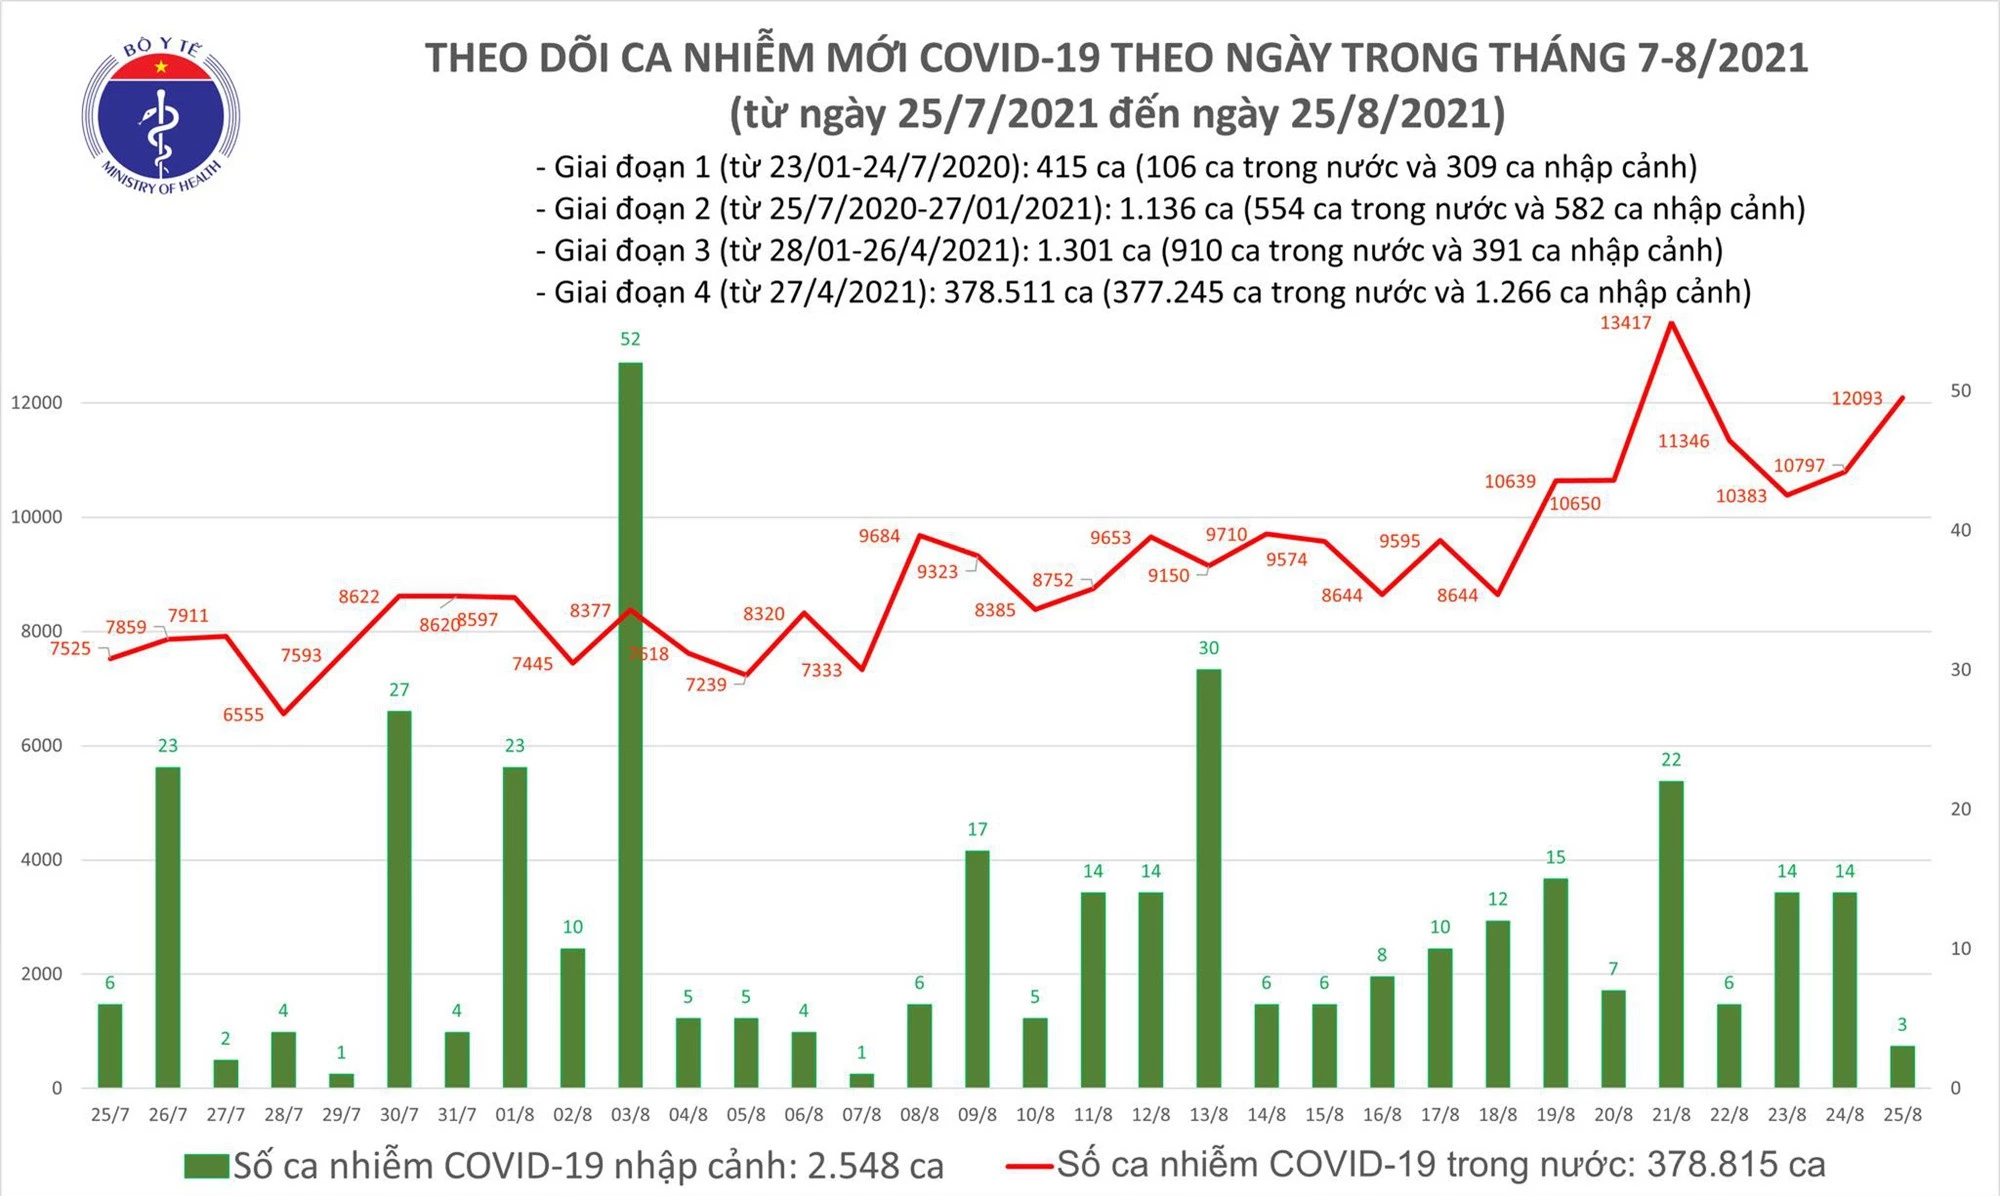 Tối 25/8: Thêm 12.09 ca mắc COVID-19, riêng TP Hồ Chí Minh đã 5.294 ca - Ảnh 1.